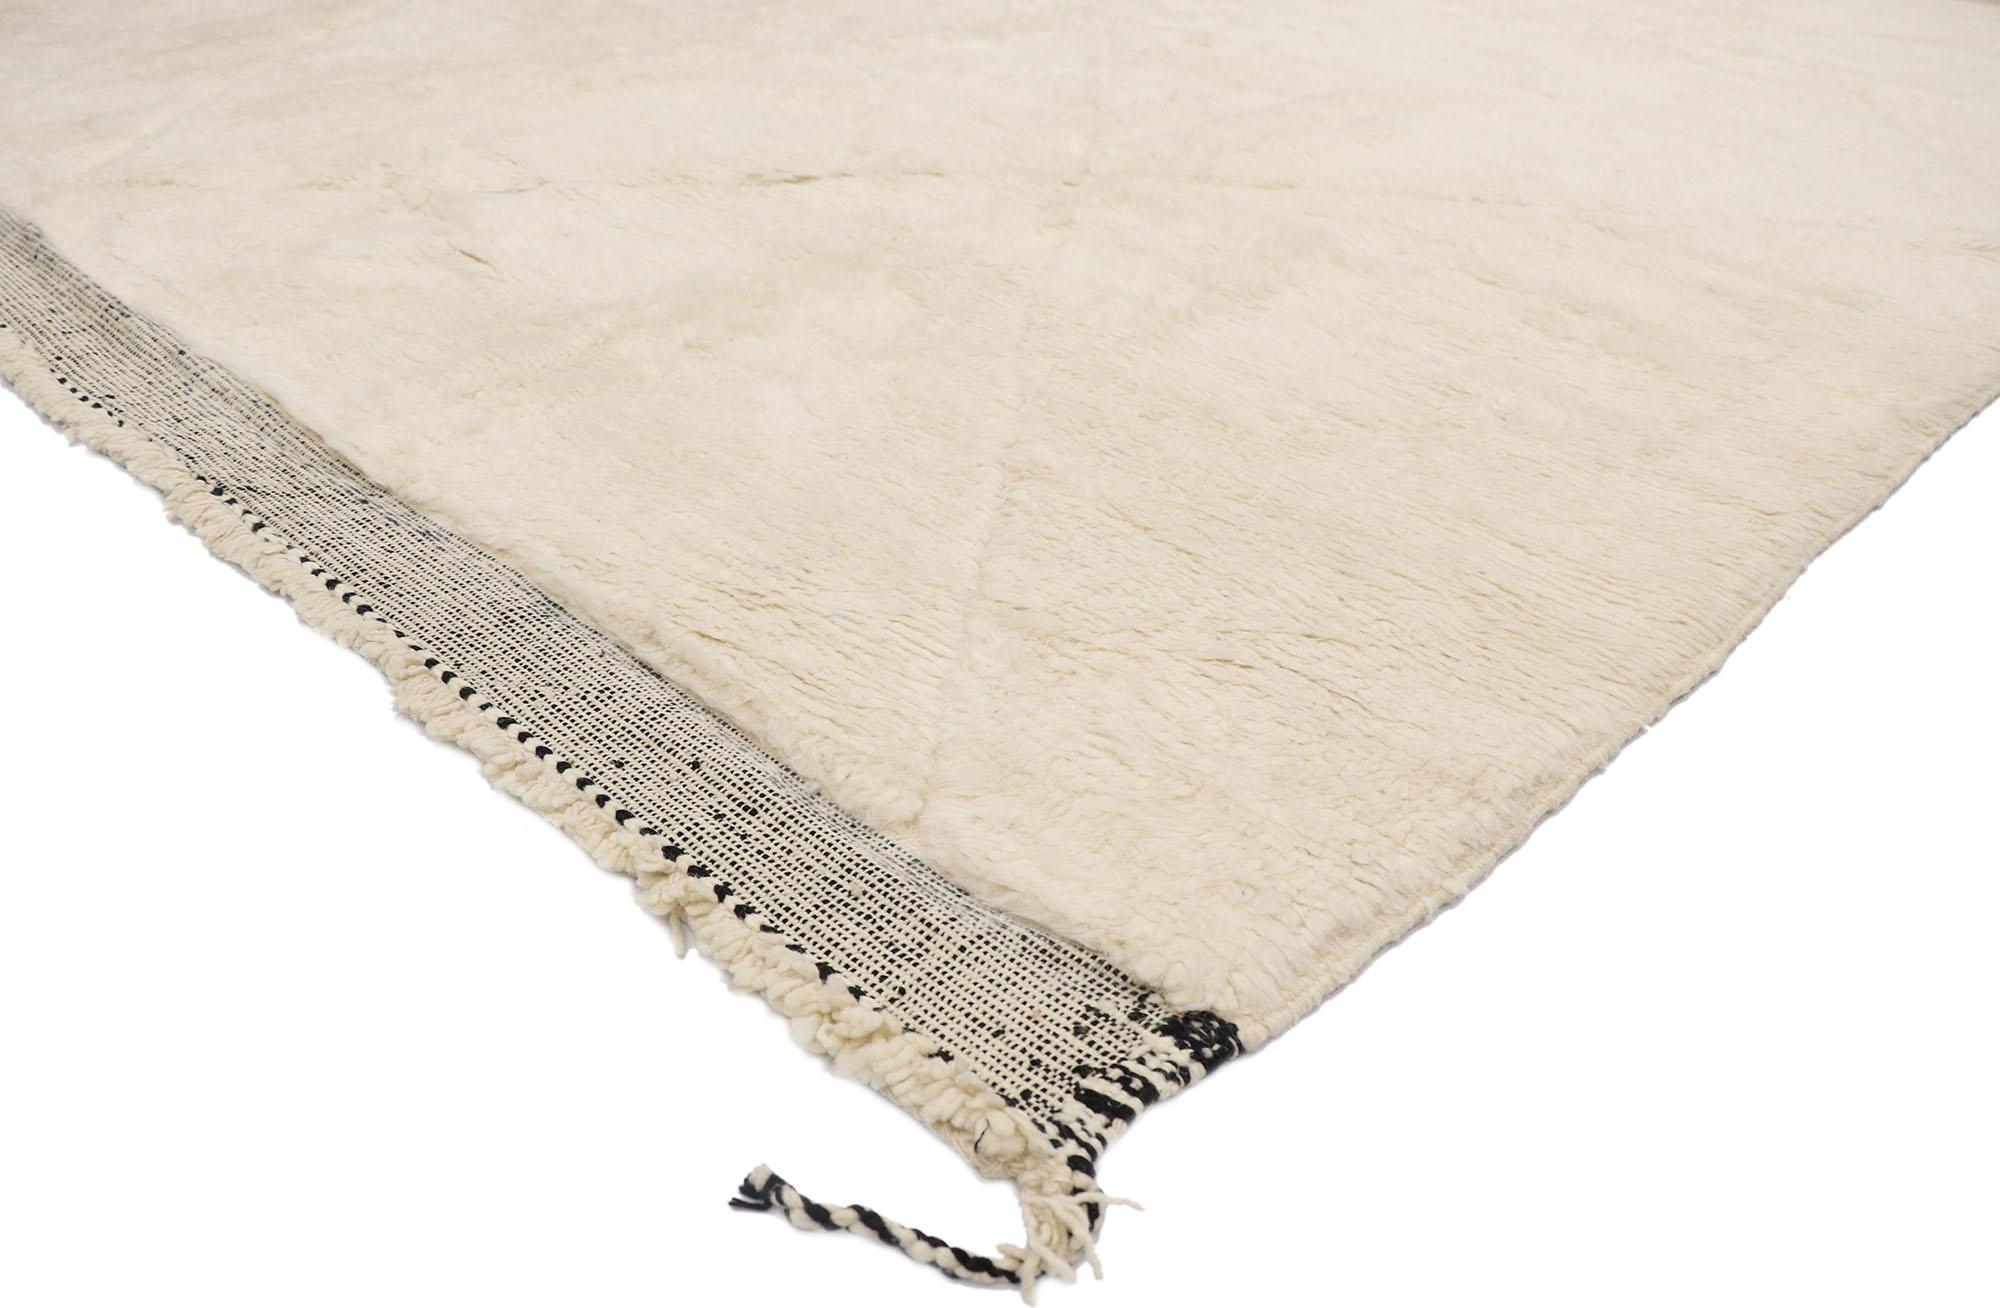 21150 Nouveau tapis berbère marocain contemporain de style minimaliste 10'06 x 12'01. Avec sa simplicité, ses poils pelucheux et ses ondes Hygge, ce tapis berbère marocain contemporain en laine nouée à la main procure une sensation de contentement